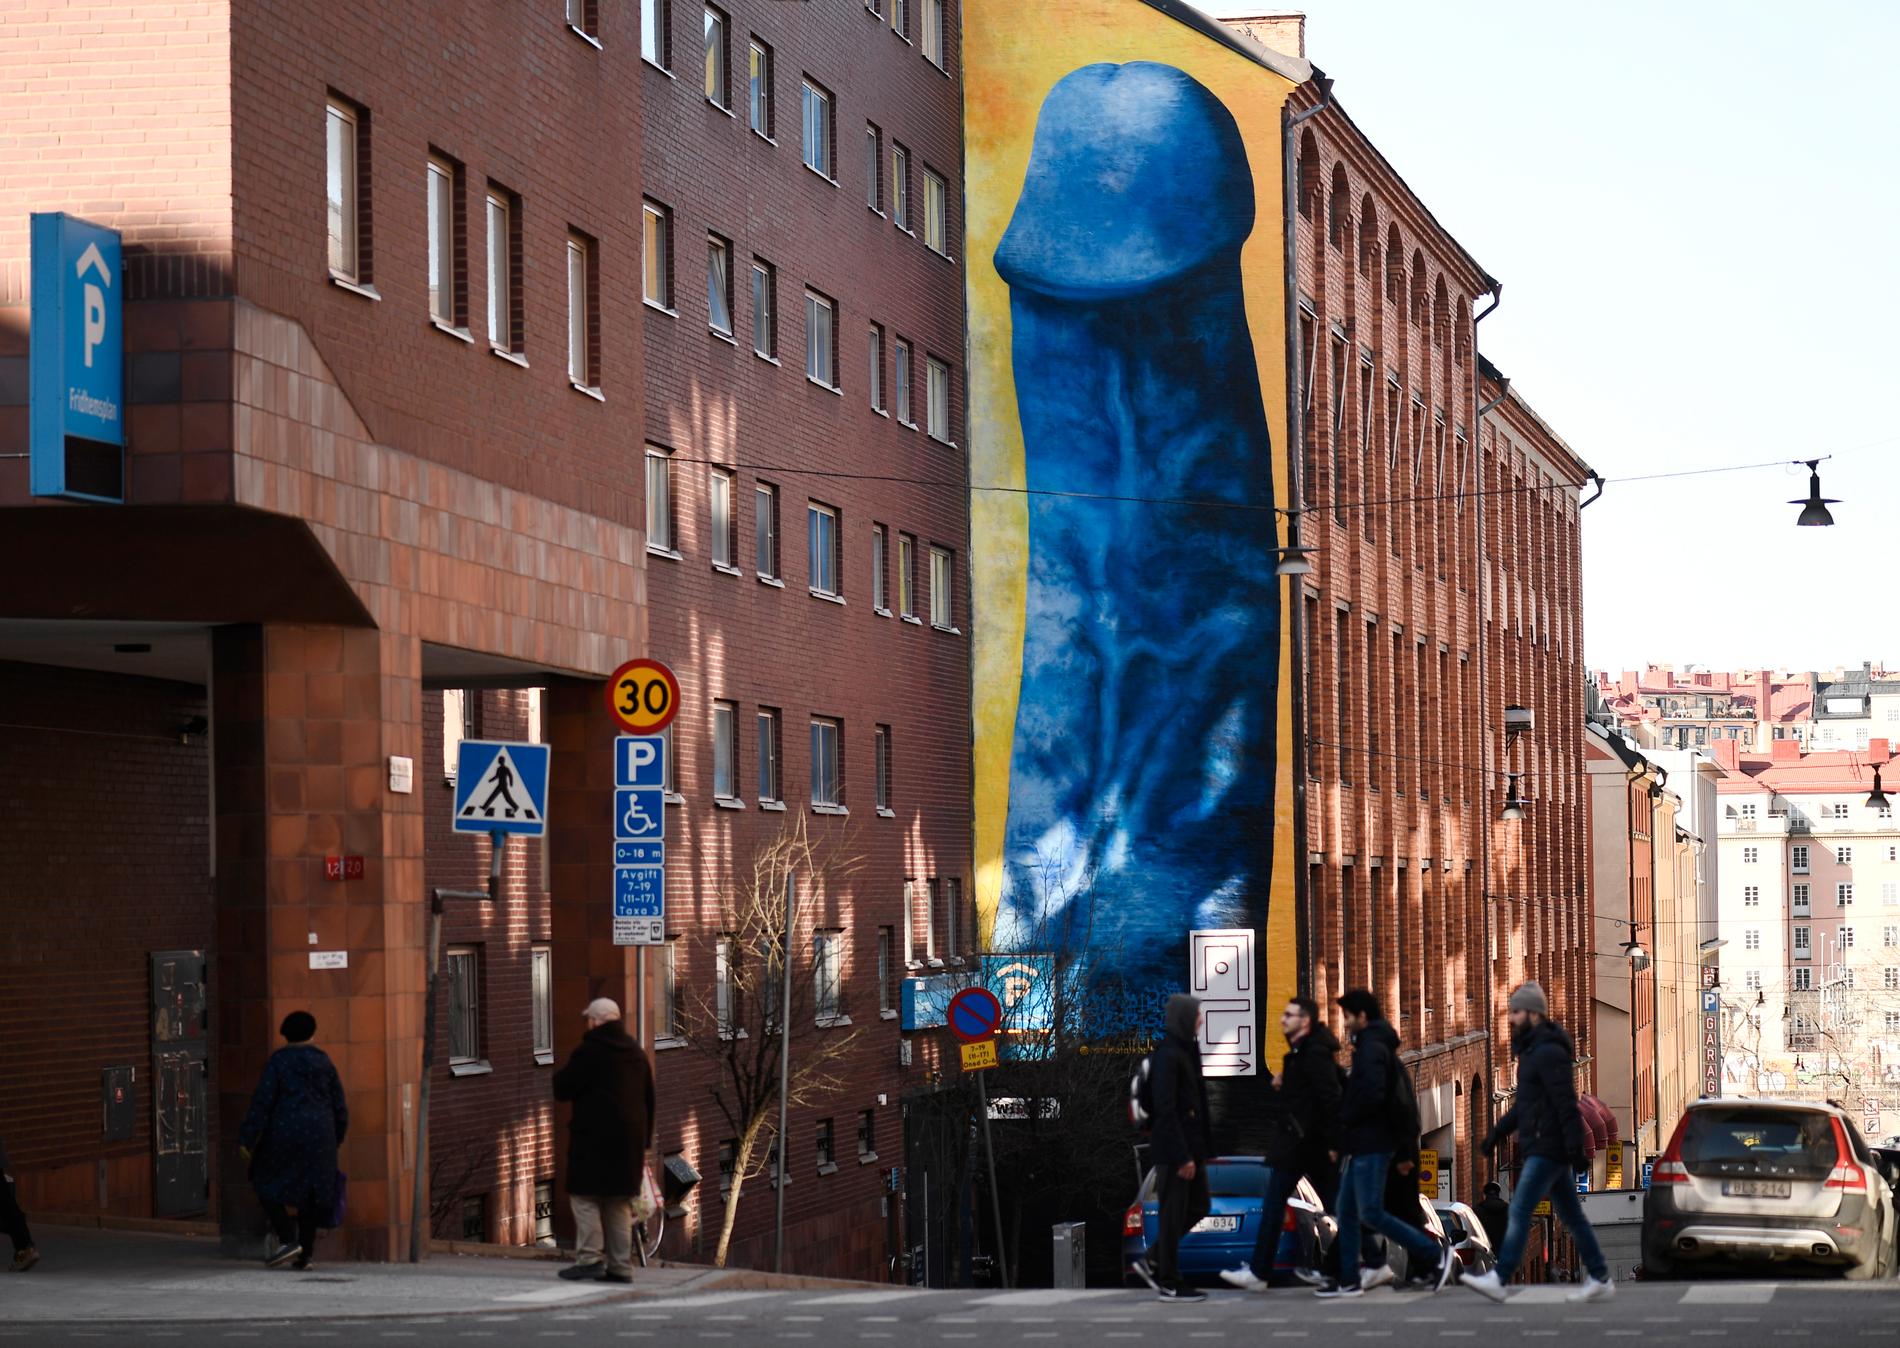 Forskare vid Karolinska institutet undersöker vad människor tycker om utseendet på sitt kön. Bilden visar en målning av konstnären Carolina Falkholt. Målningen prydde en husvägg på Kronobergsgatan på Kungsholmen i Stockholm en period under 2018. Arkivbild.